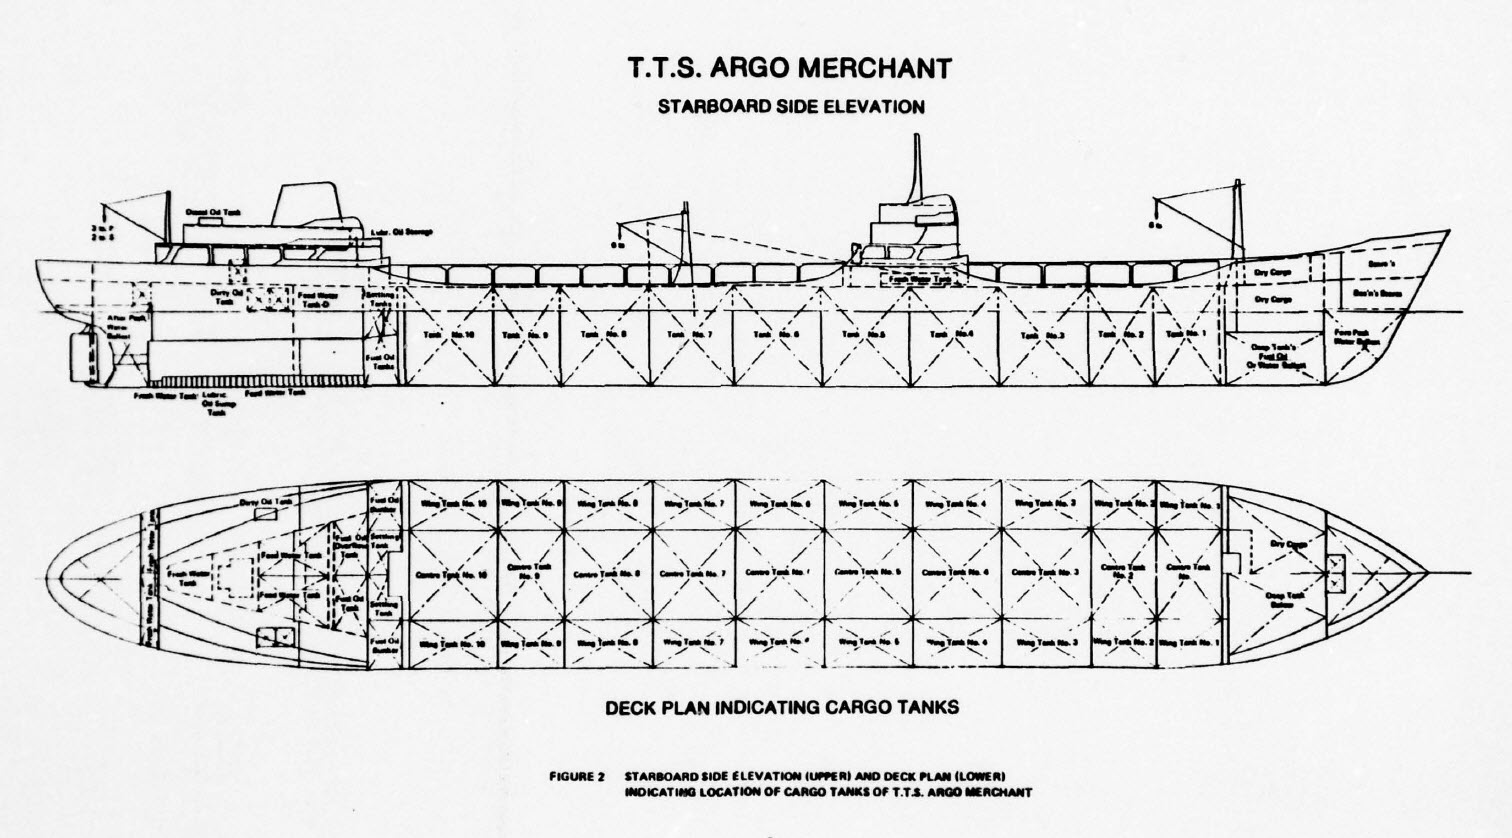 USCG HH-3 overflies wreck of SS ARGO MERCHANT